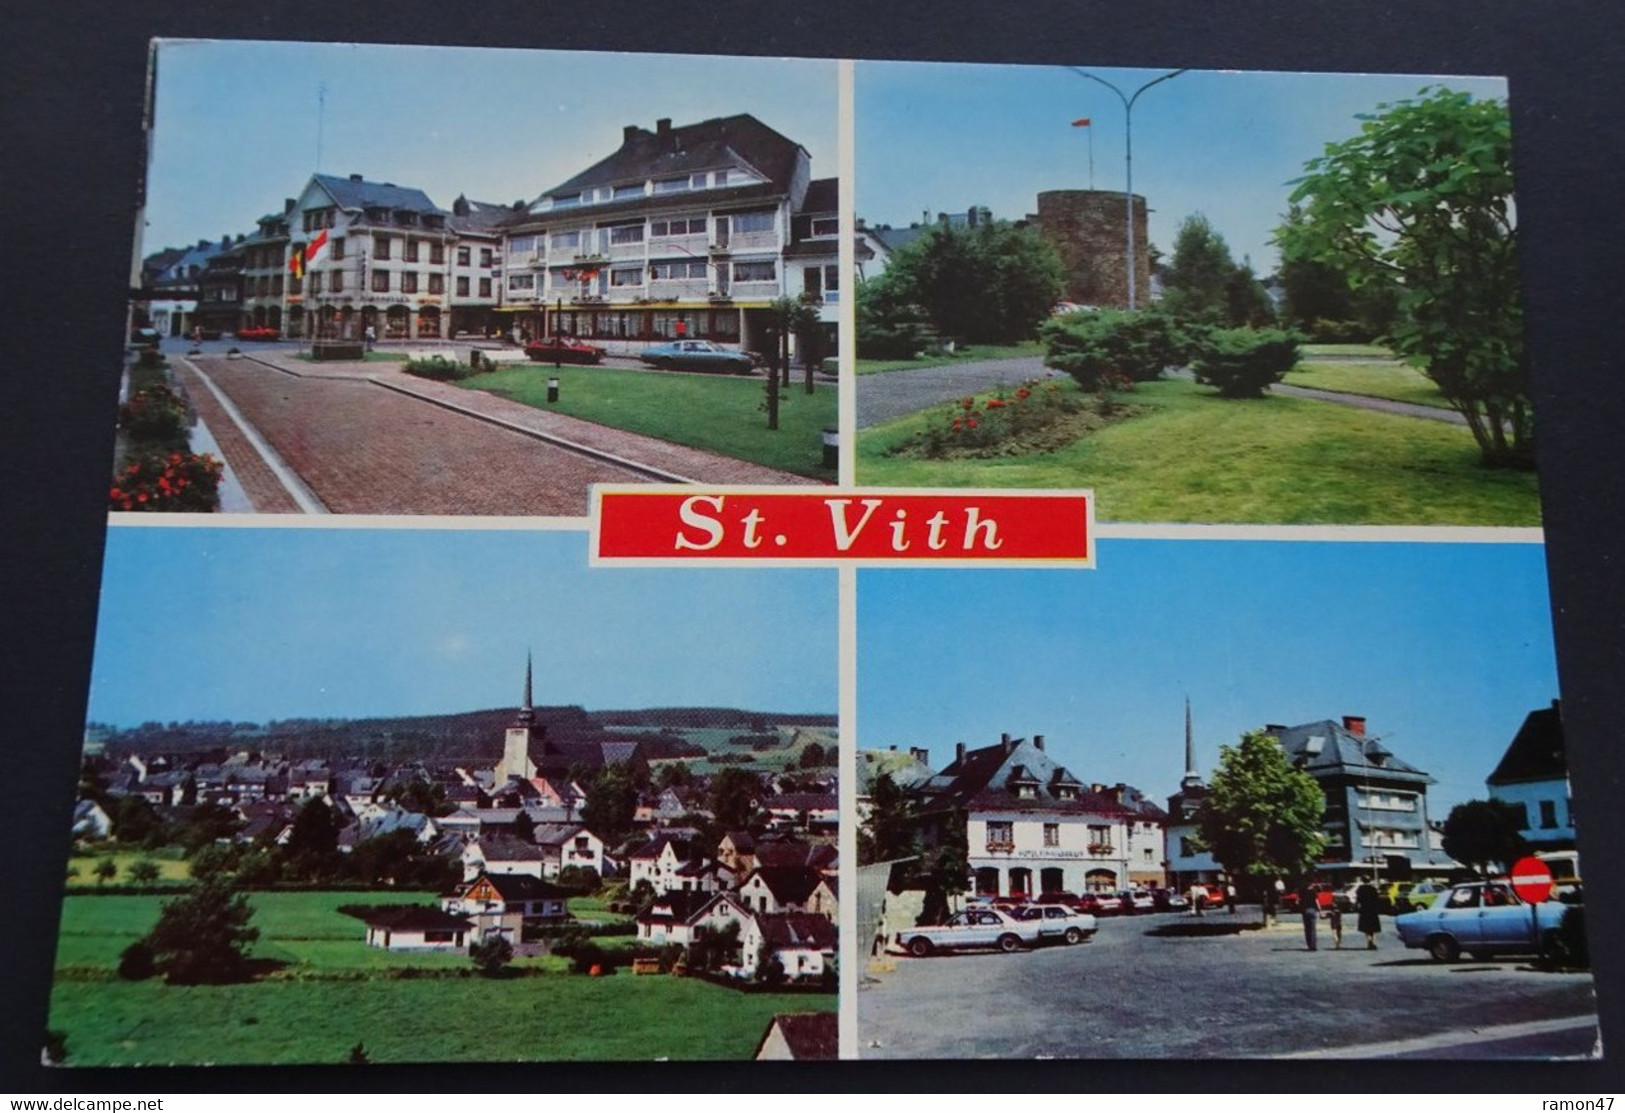 St. Vith - Verlag Lander, Eupen - # 1387 - Sankt Vith